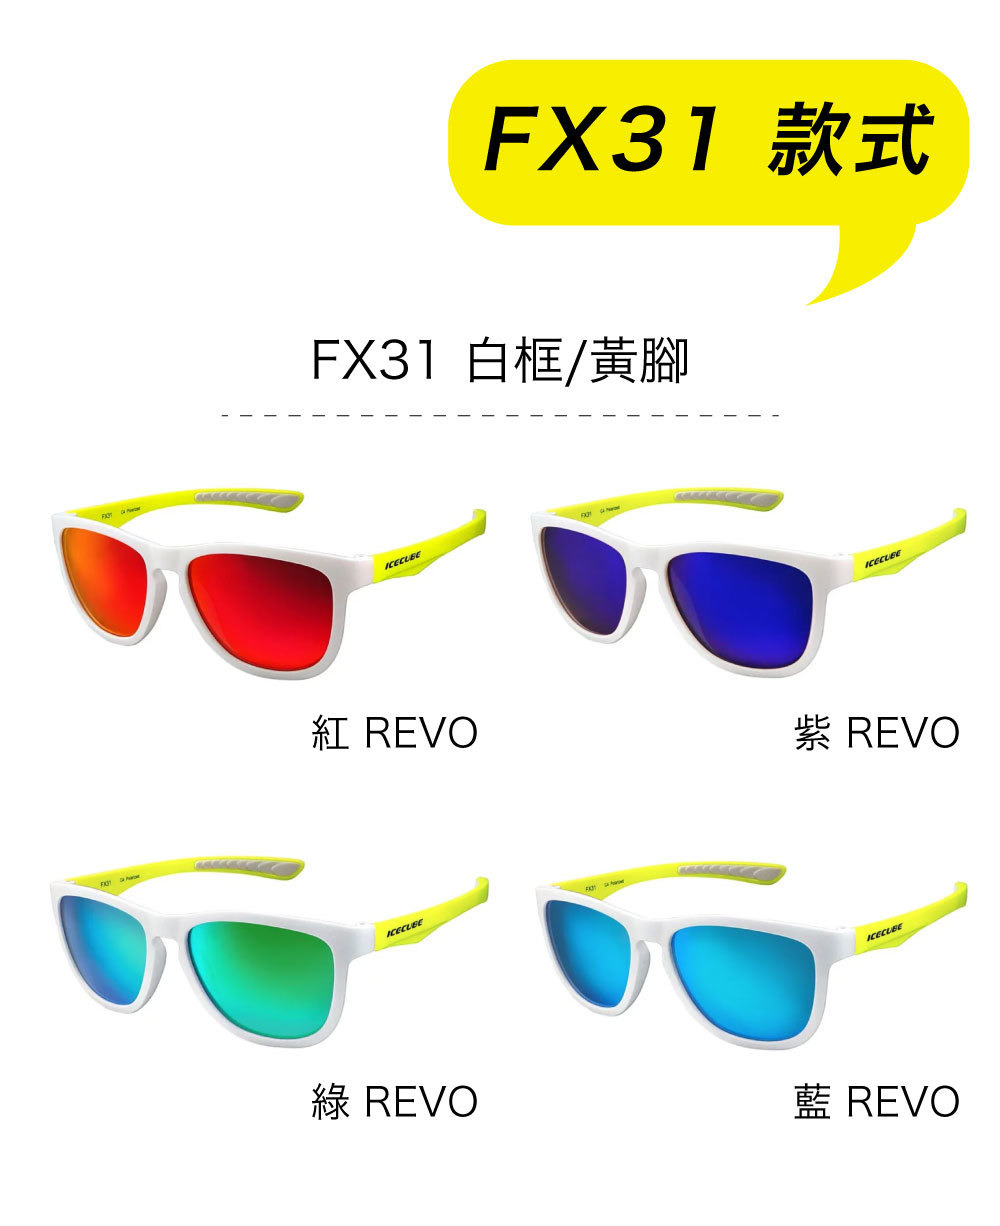 ICECUBE 台灣運動太陽眼鏡 FX31 規格